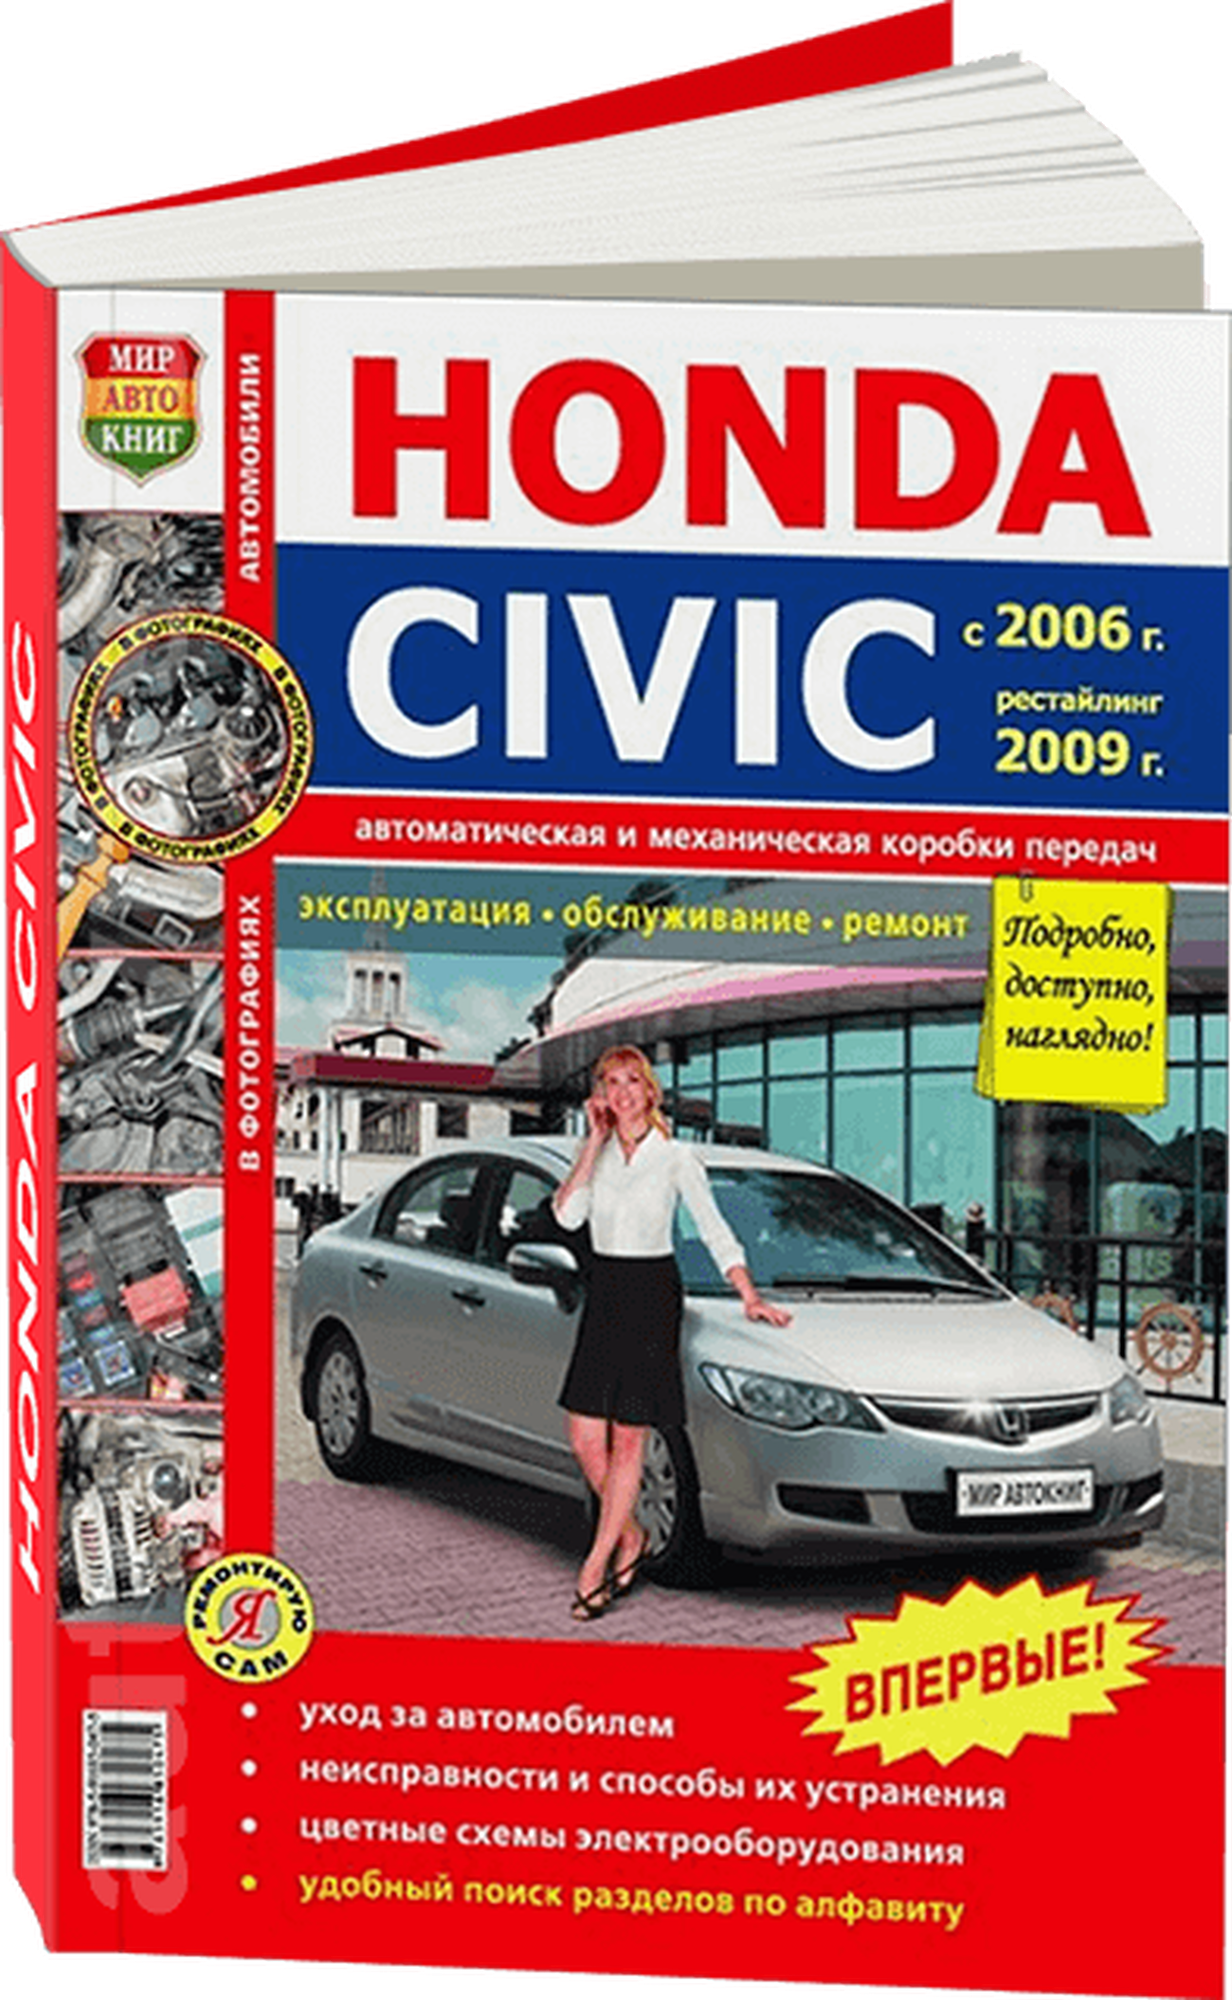 "Автомобили Honda Civic (с 2006 г. рестайлинг 2009 г.). Эксплуатация обслуживание ремонт"